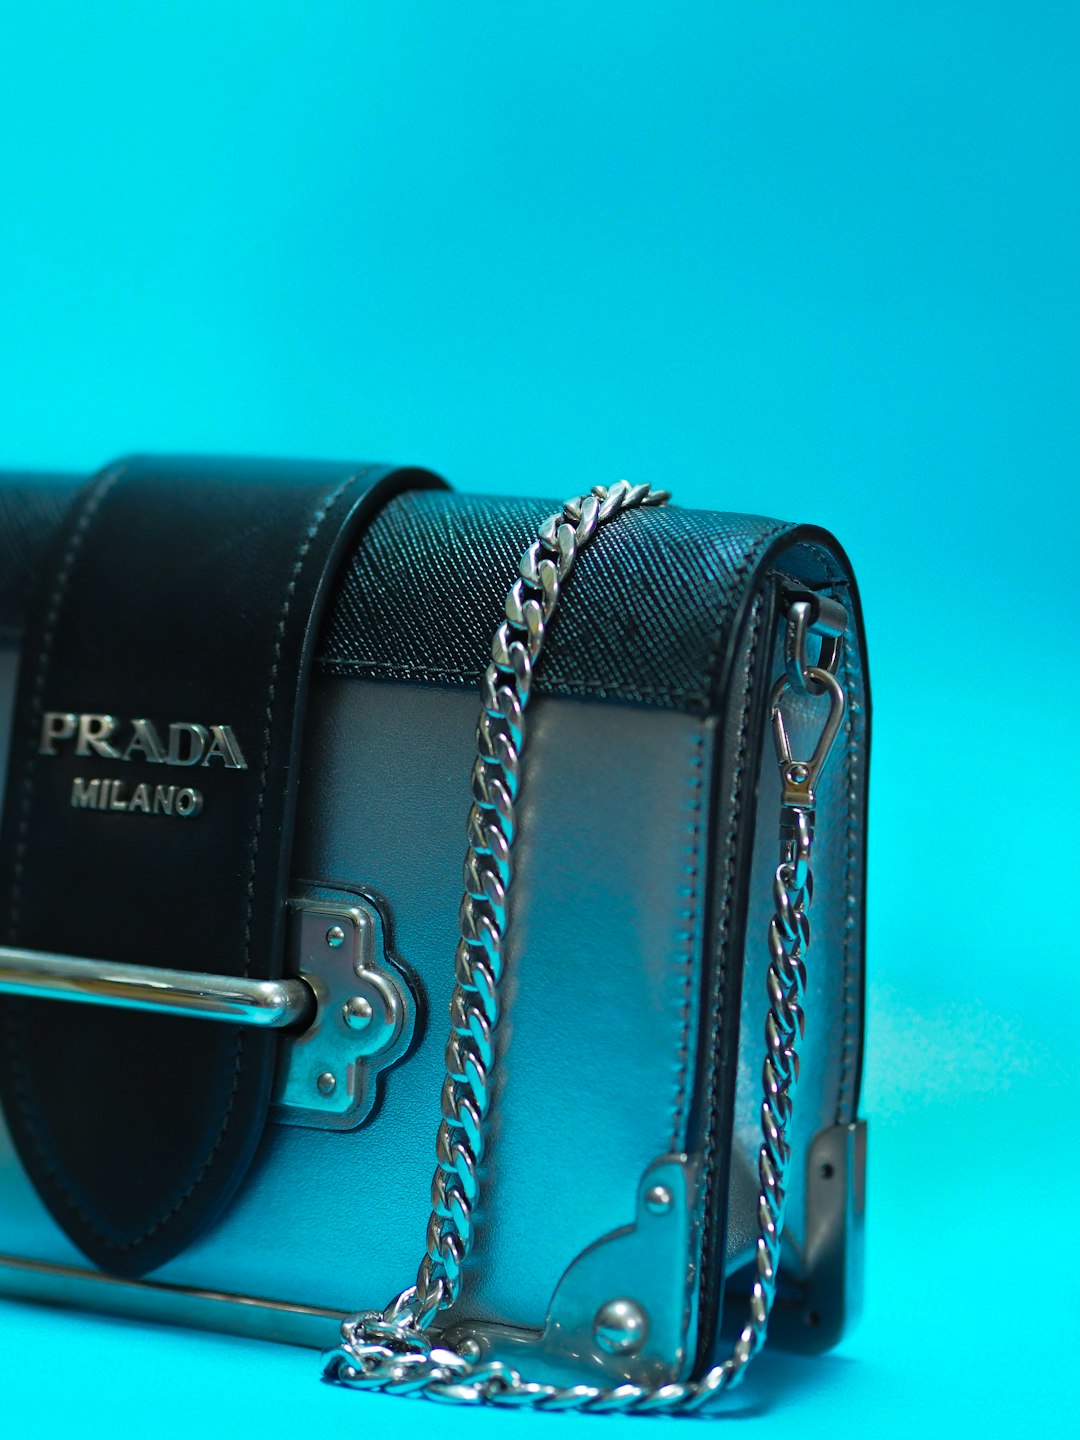 black leather handbag on teal surface